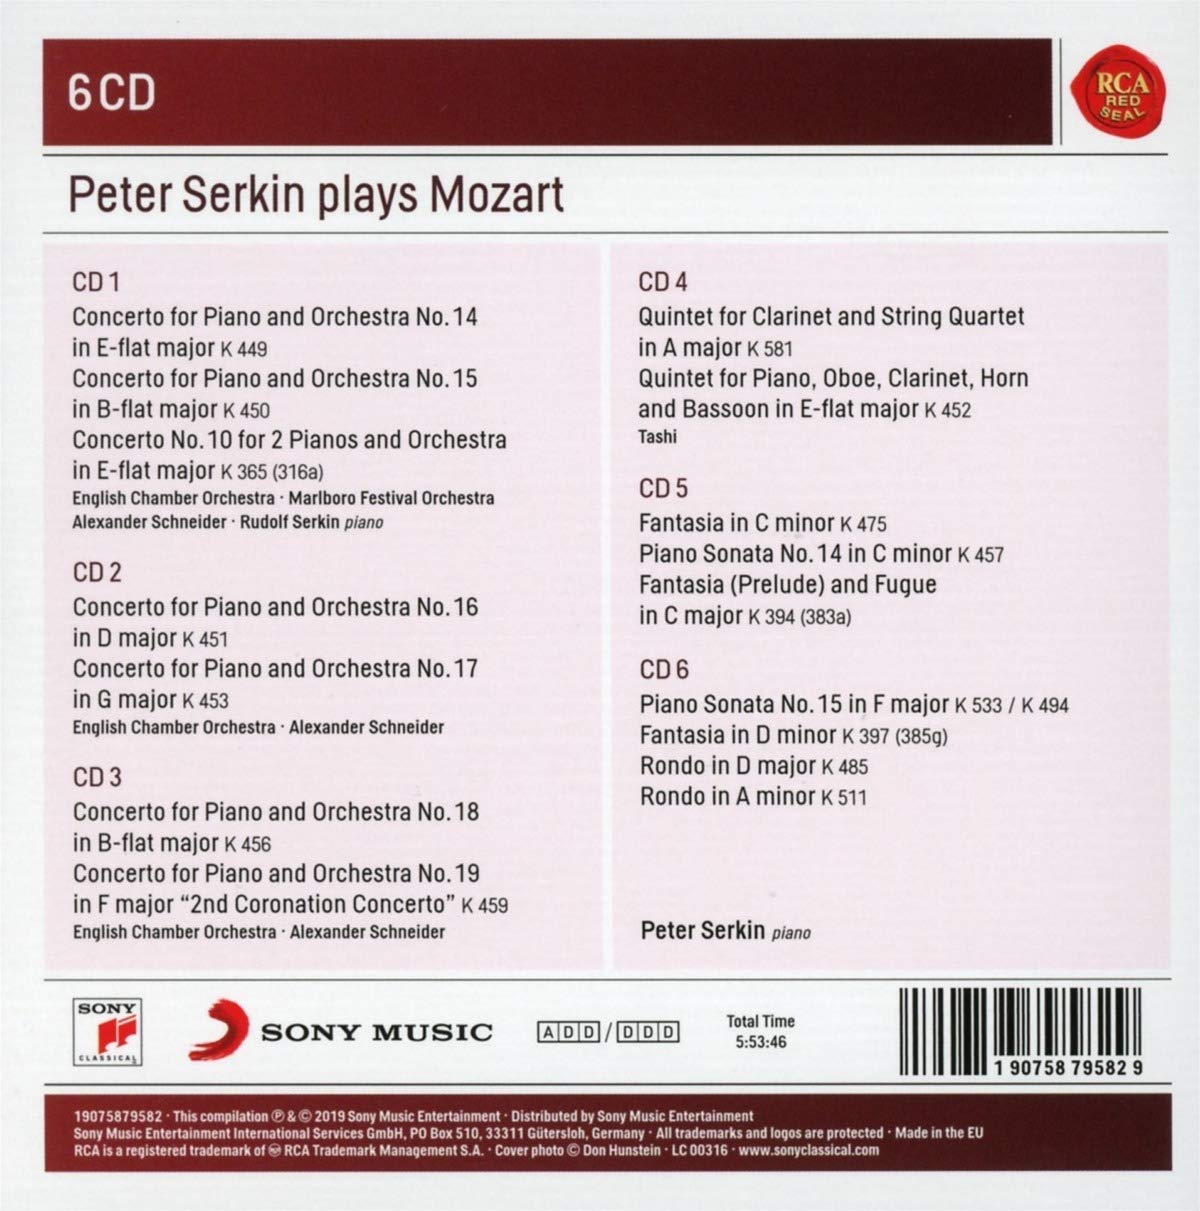 PETER SERKIN PLAYS MOZART (6 CDS)